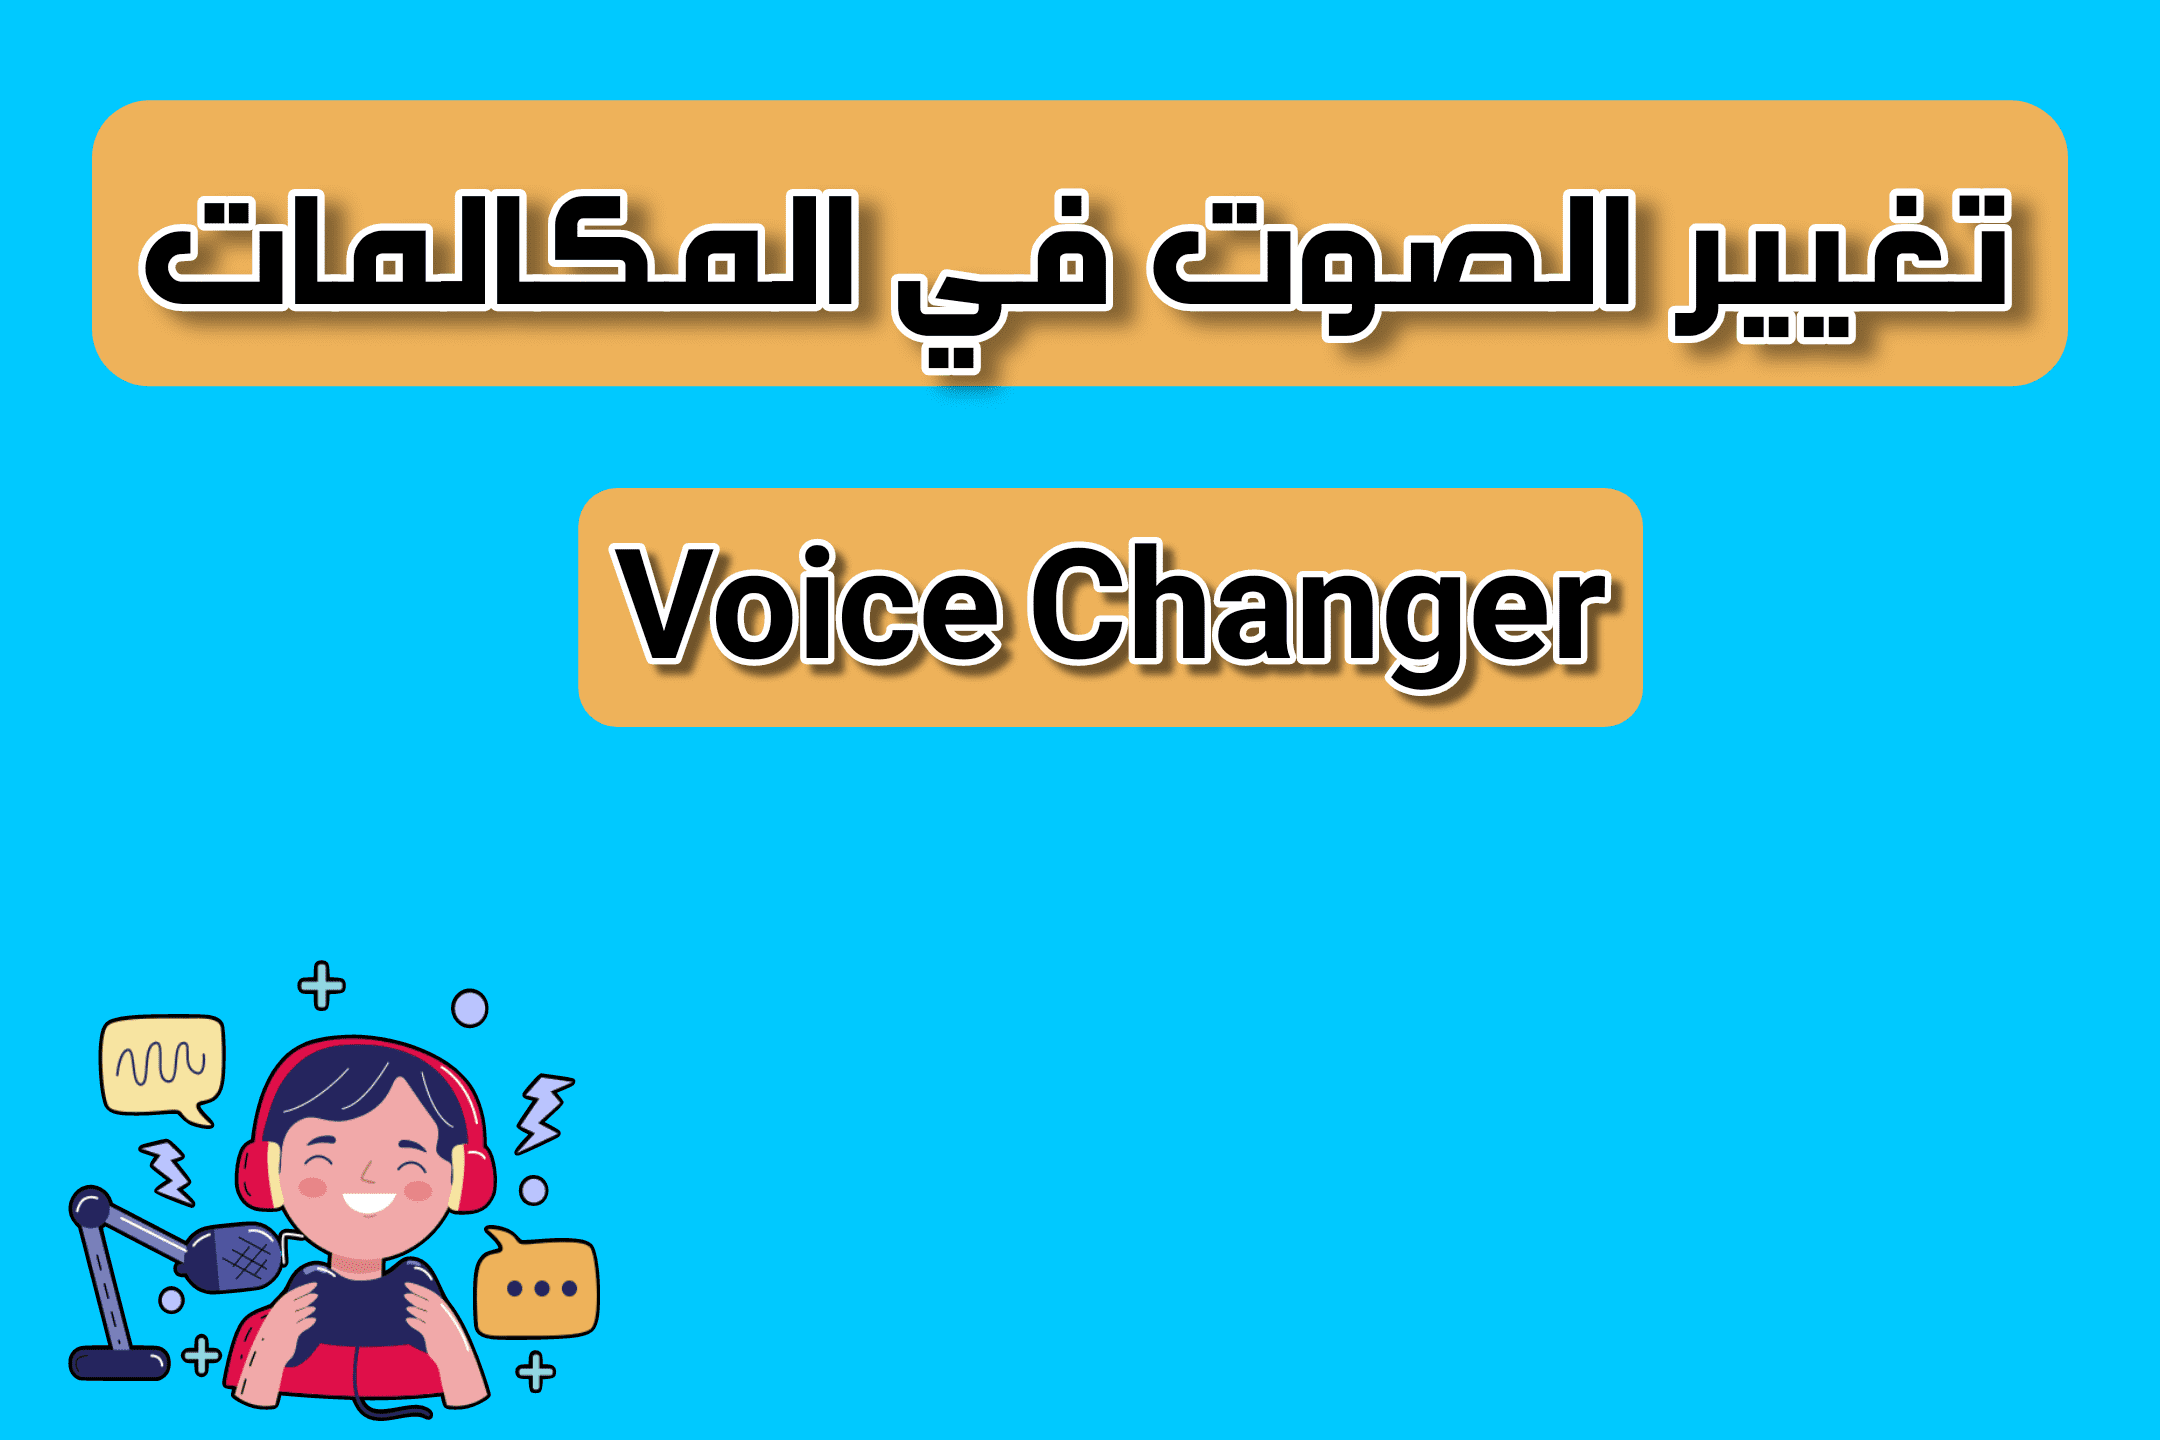 تطبيق تغيير الصوت في المكالمات للايفون و الاندرويد voice changer